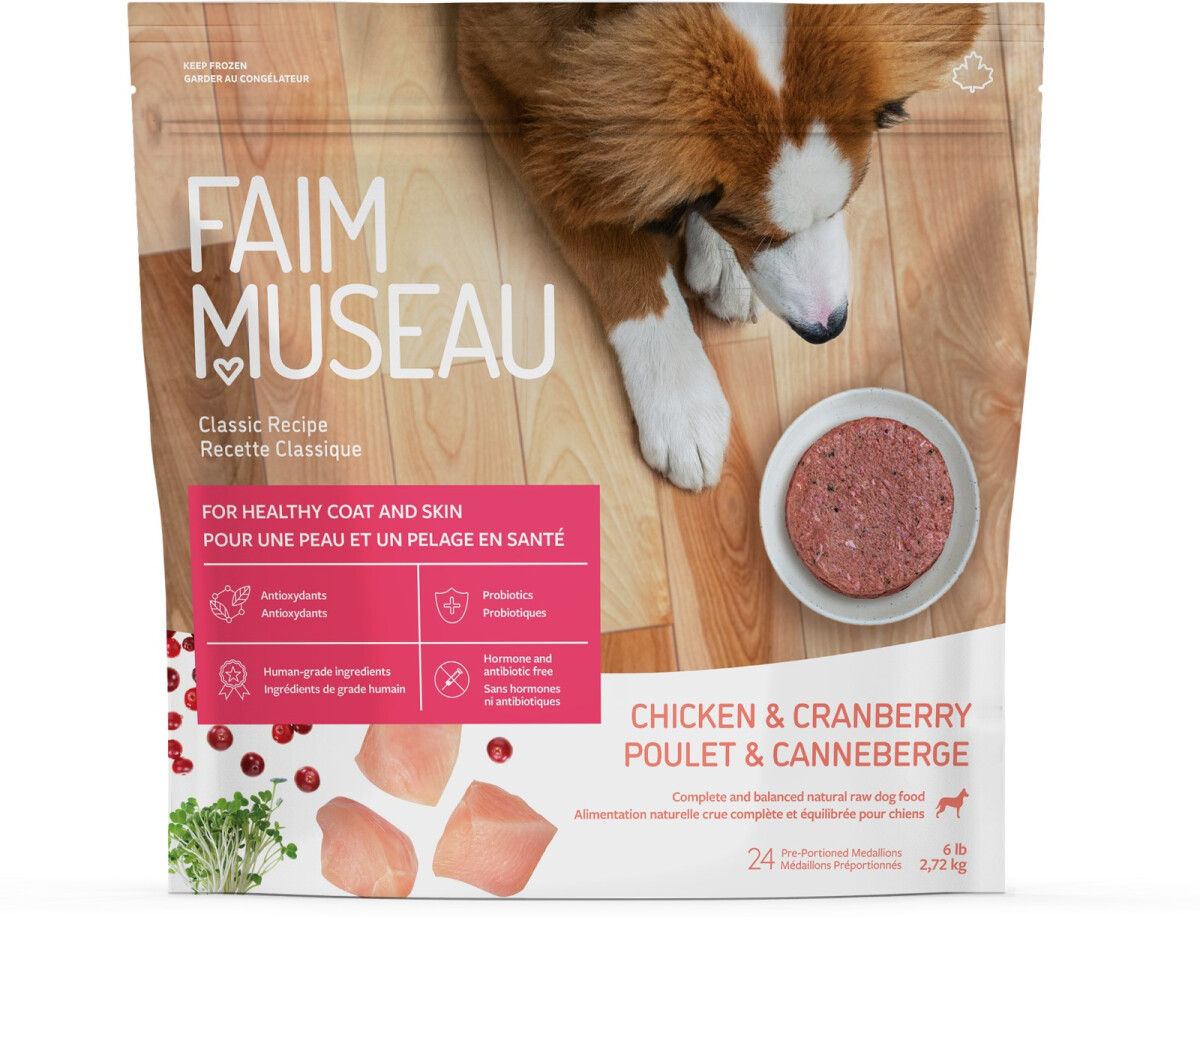 Fm118 - Nourriture crue recette classique poulet & canneberge pour chiens - Faim Museau